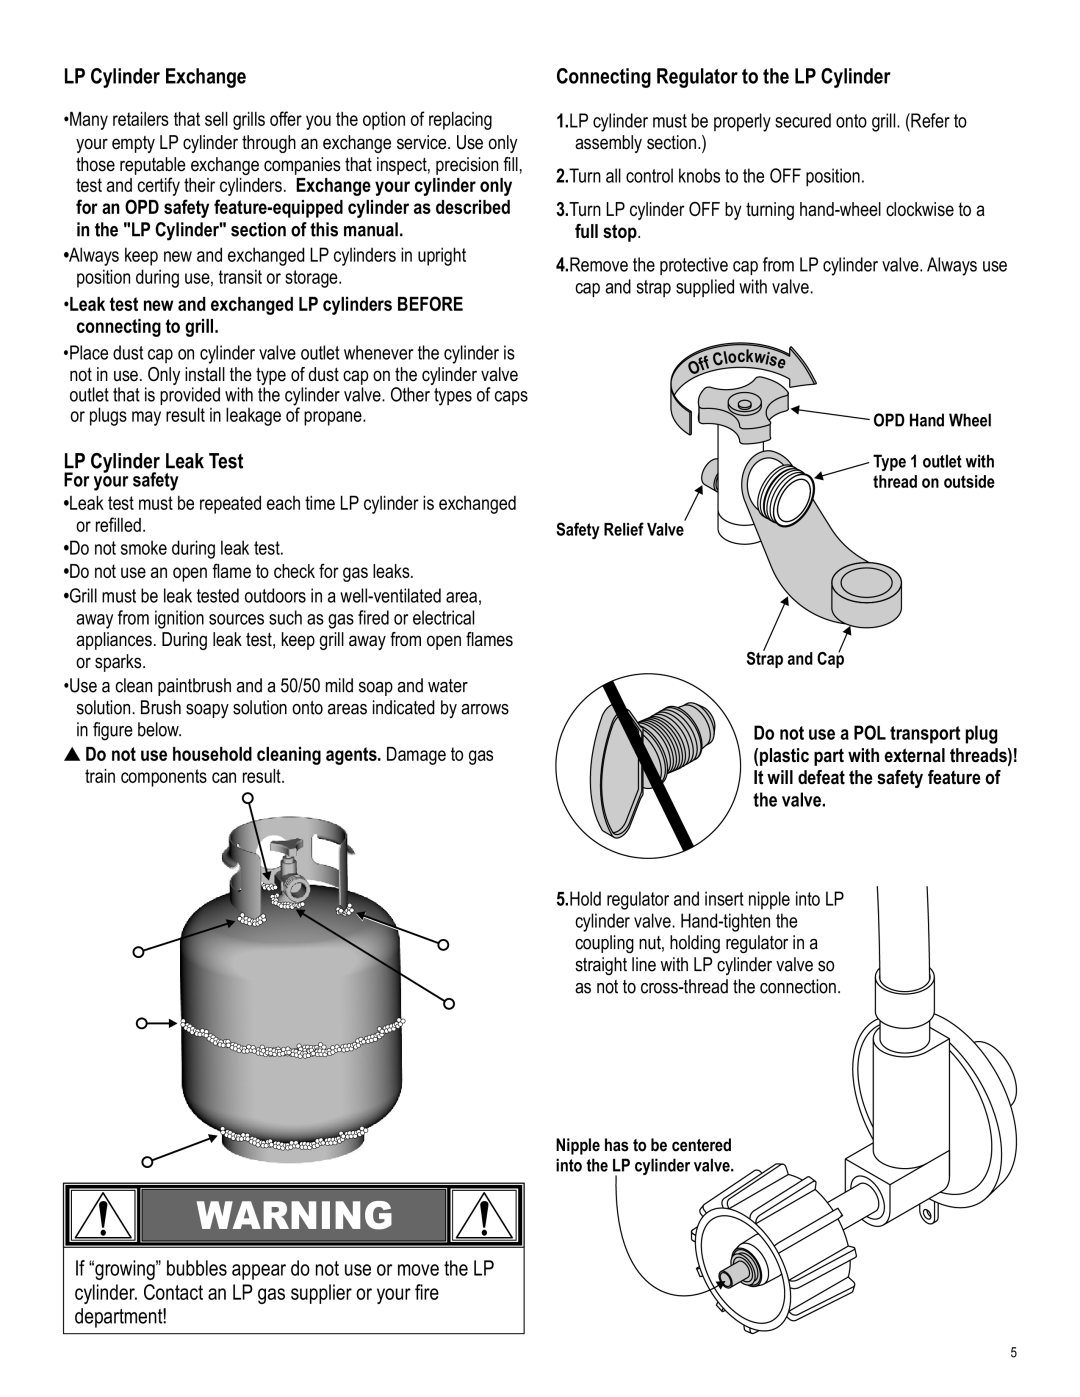 Char-Broil 415.9011211, 466224611 manual LP Cylinder Exchange, LP Cylinder Leak Test, department, For your safety 